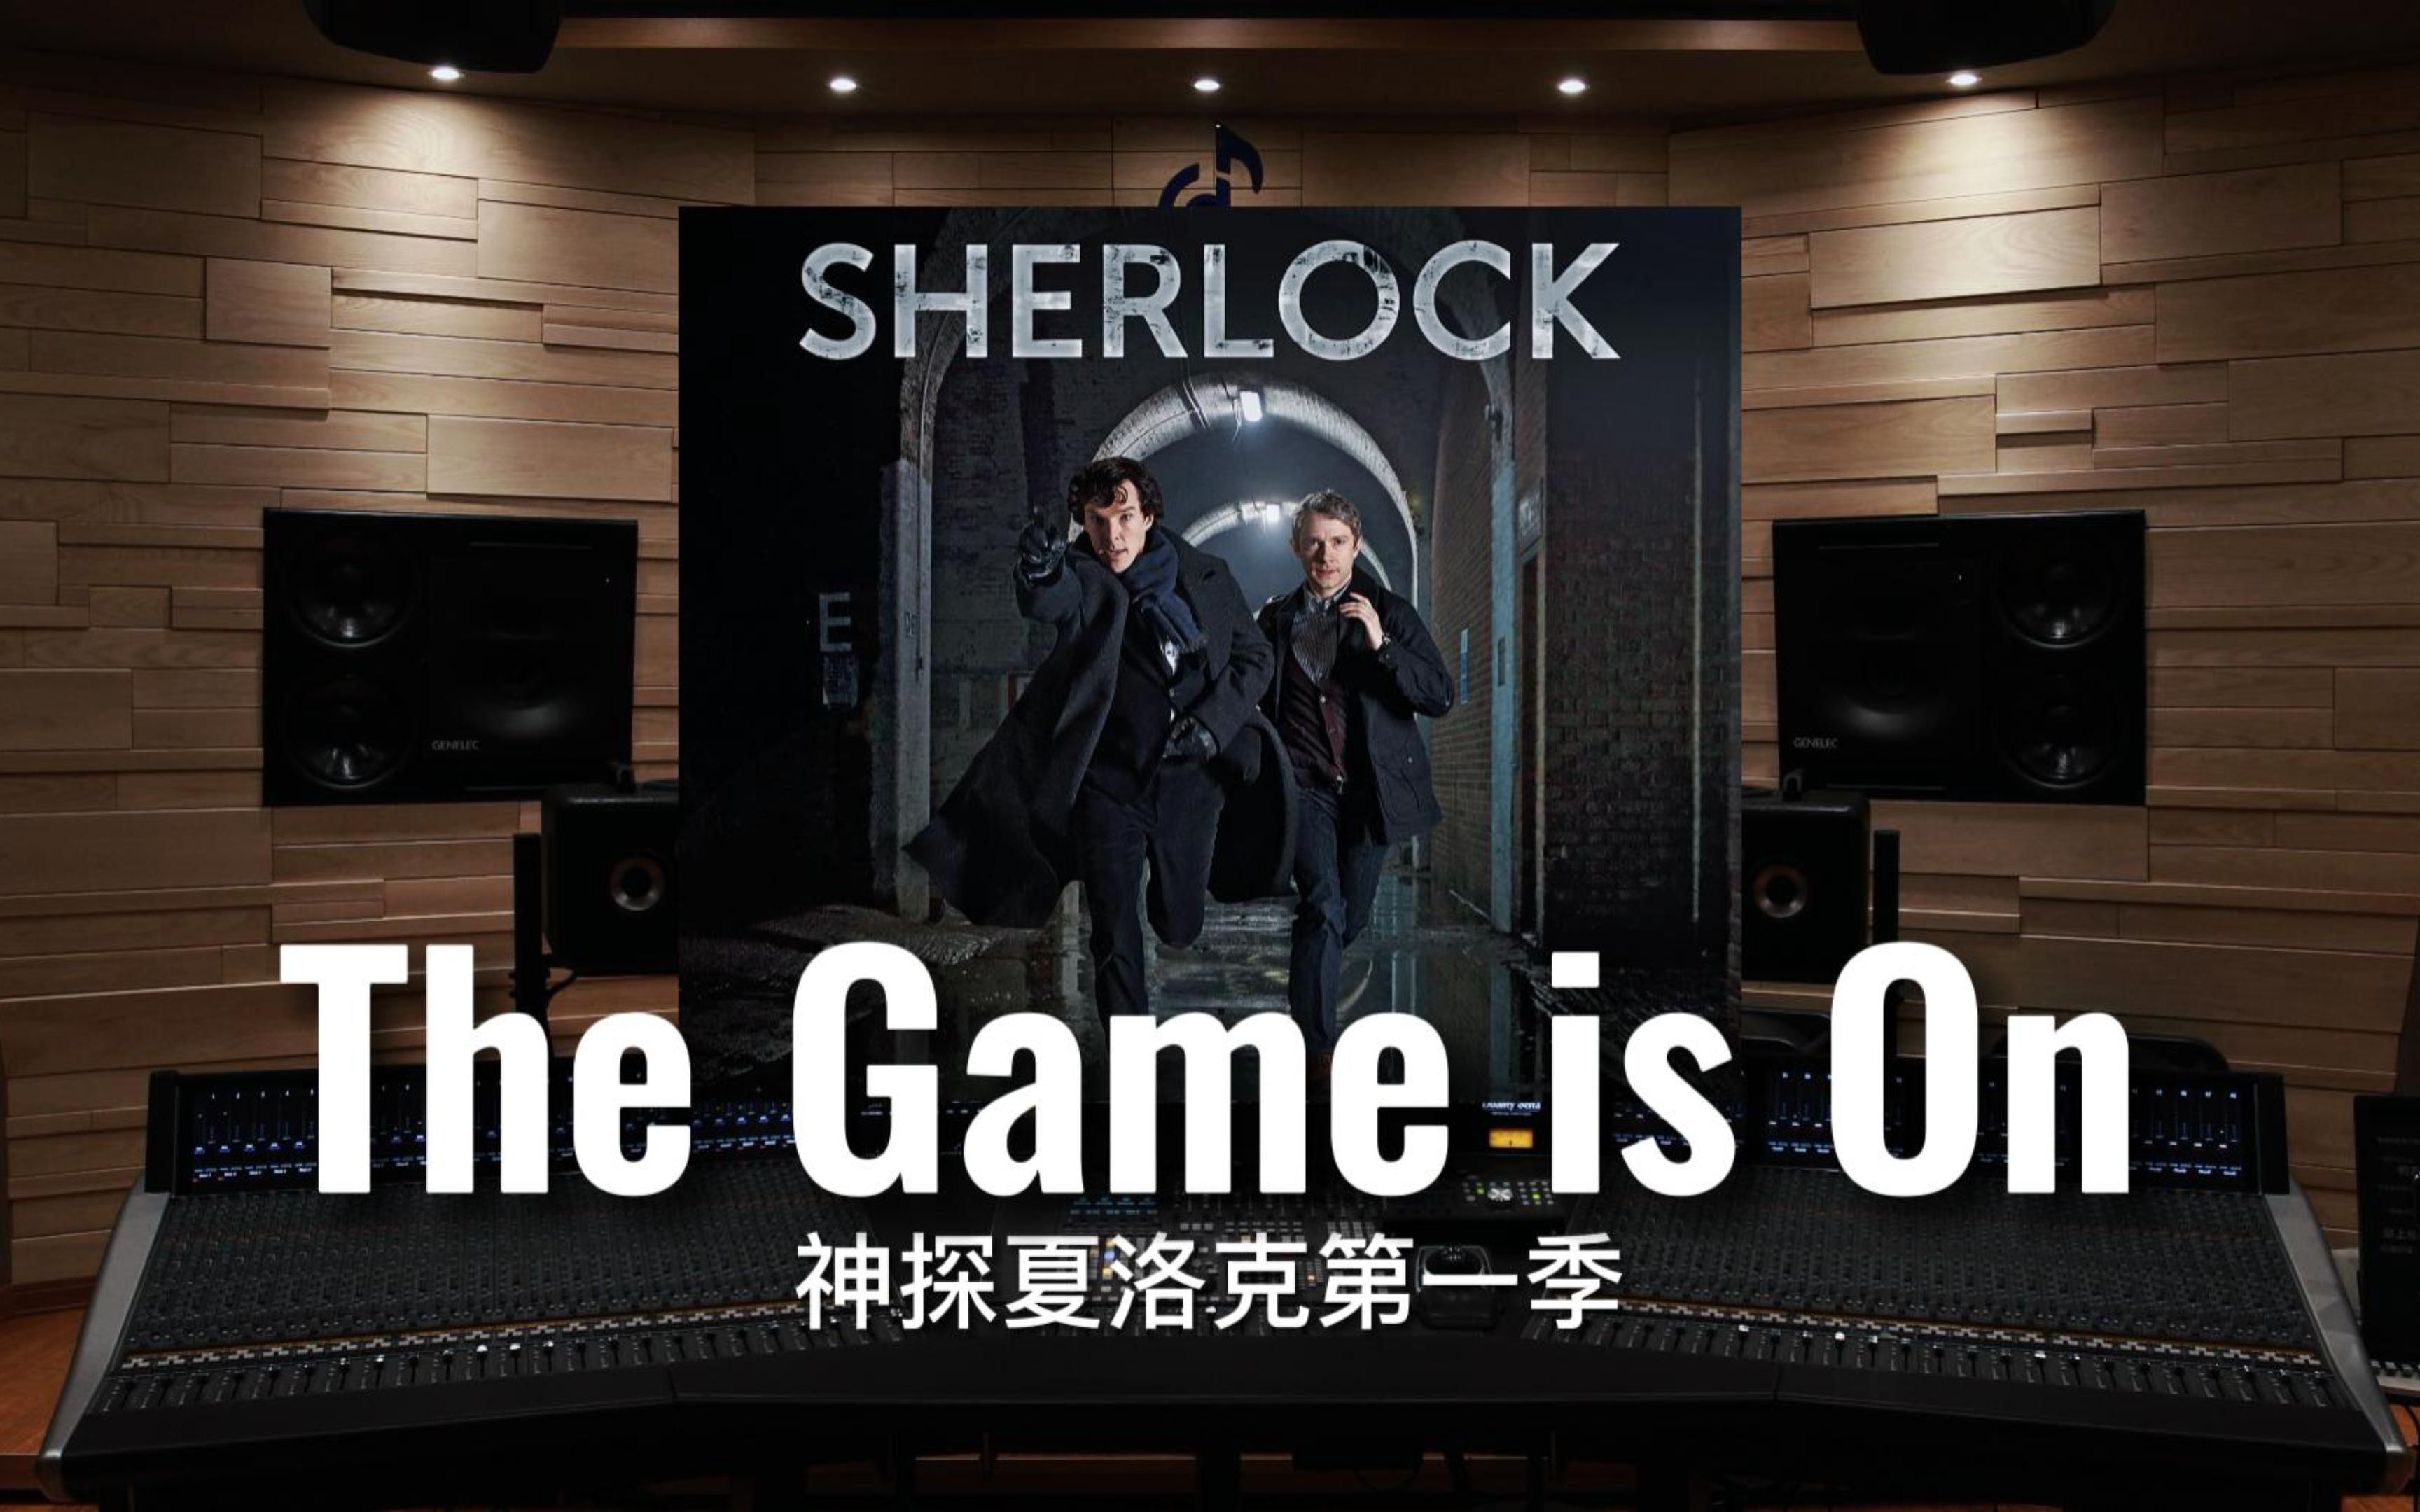 【神探夏洛克】百万级录音棚听《The Game is On》神探夏洛克第一季OST【Hi-Res】